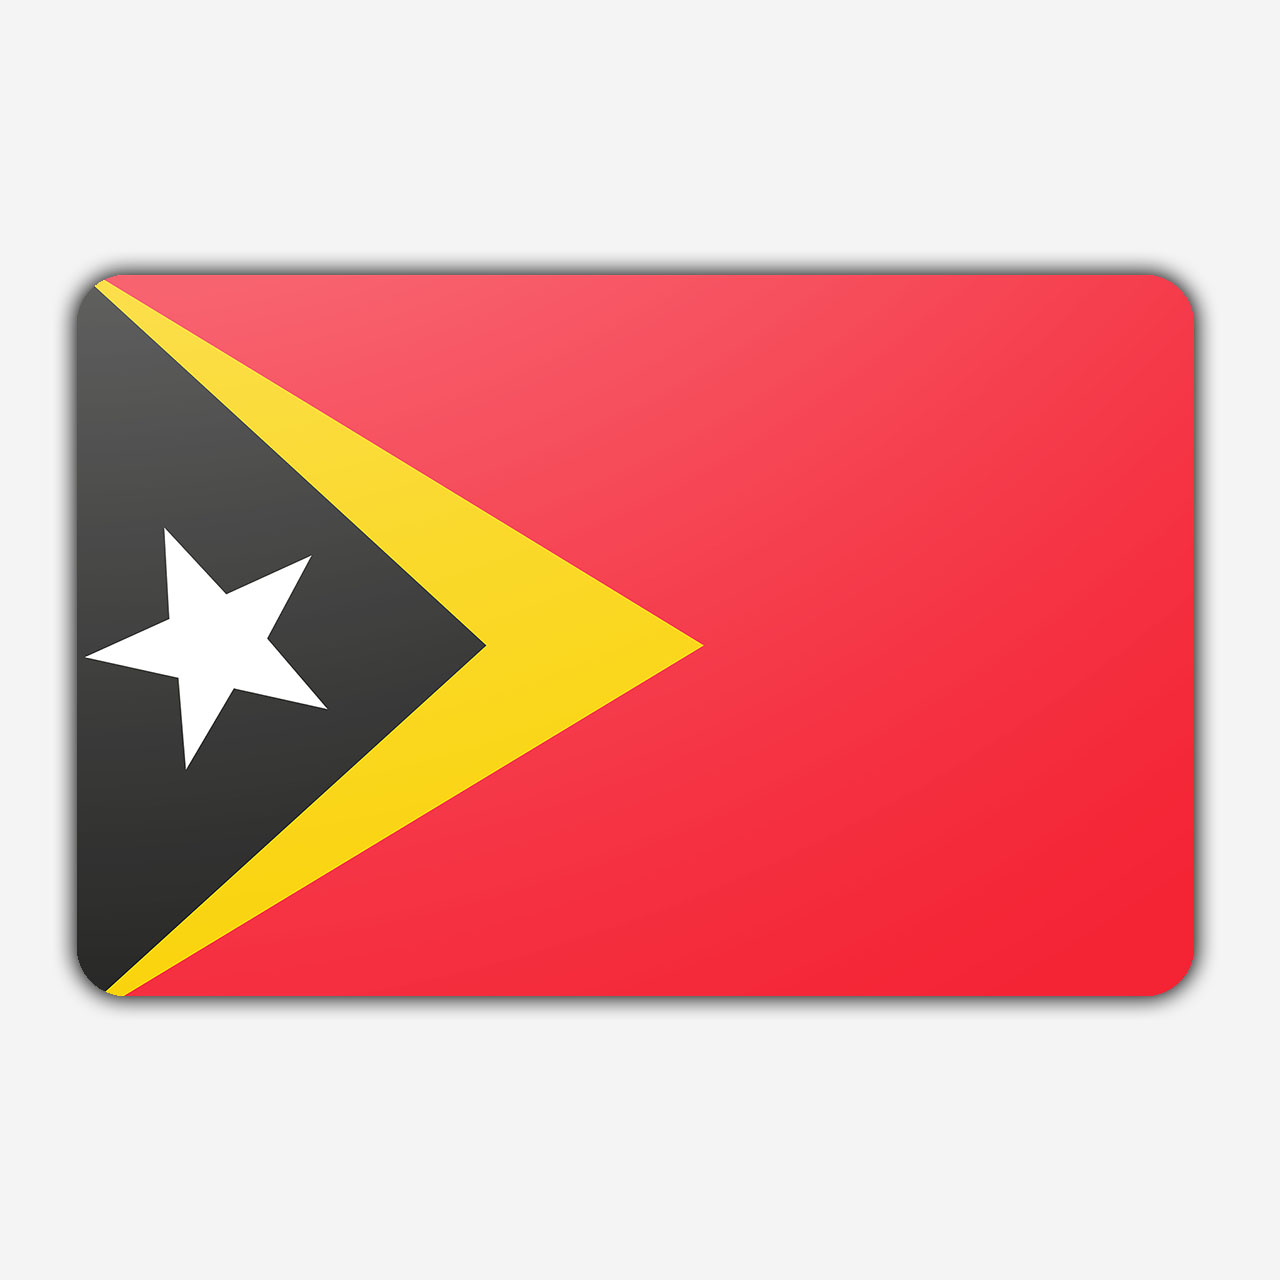 Vlag Oost Timor